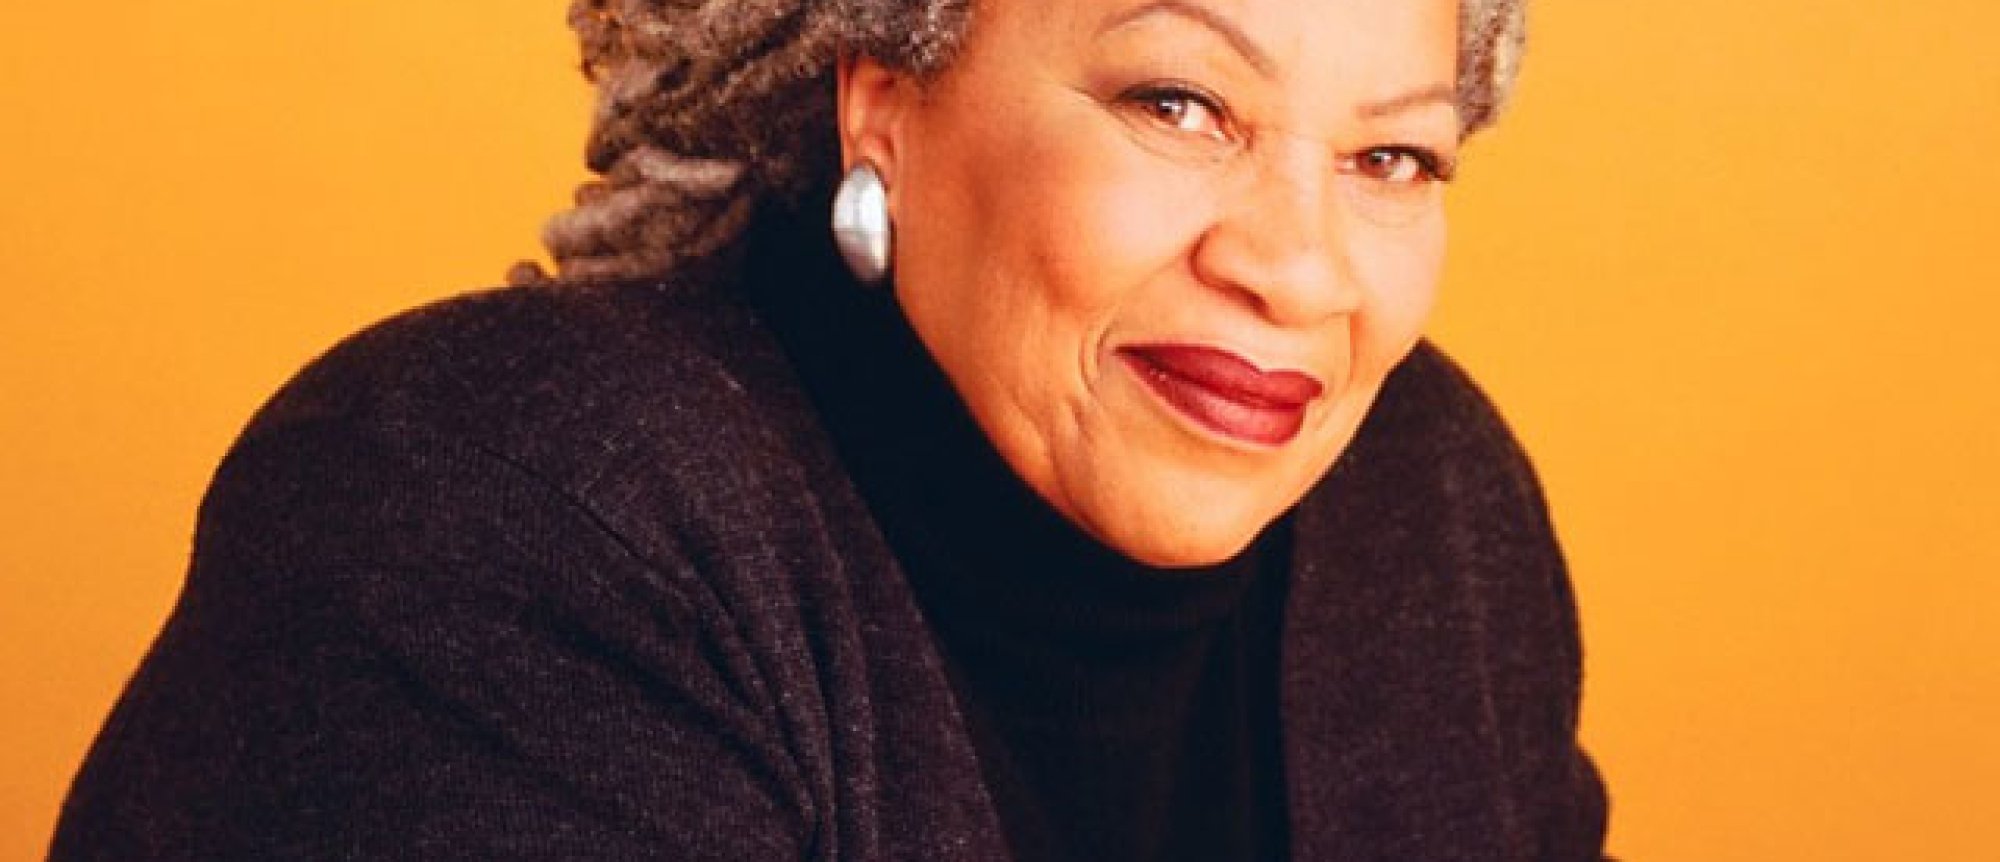 Toni Morrison (1931-2019)